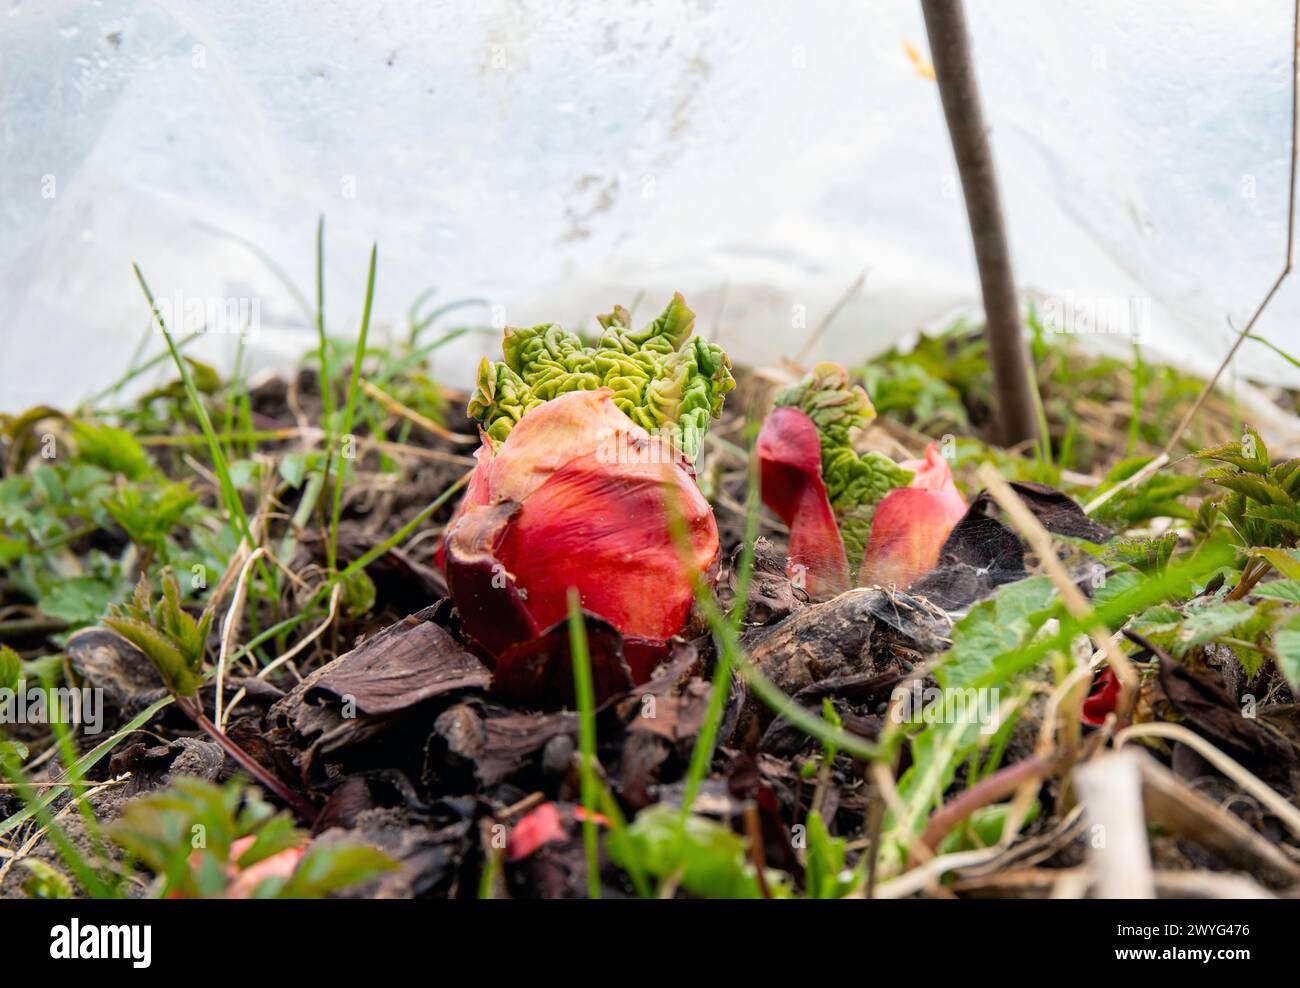 Junge frische Rhabarber sprießen im Frühling draußen im Garten aus dem Boden, bedeckt mit Gewächshausplastik, um das Wachstum mit Wärme zu beschleunigen. Stockfoto